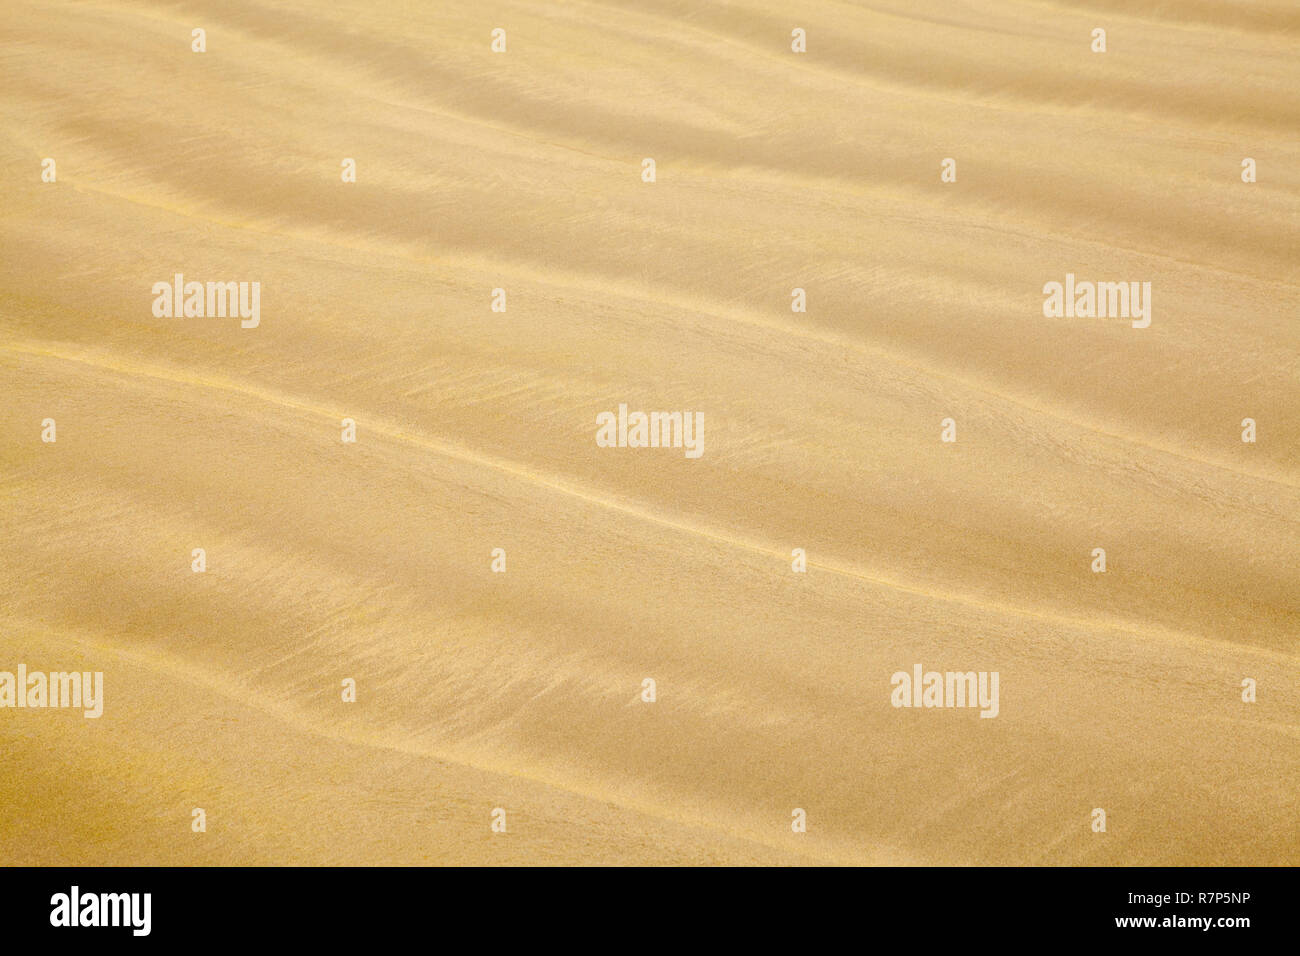 Strand Sand mit Wave Ripple Muster Hintergrund. Stockfoto